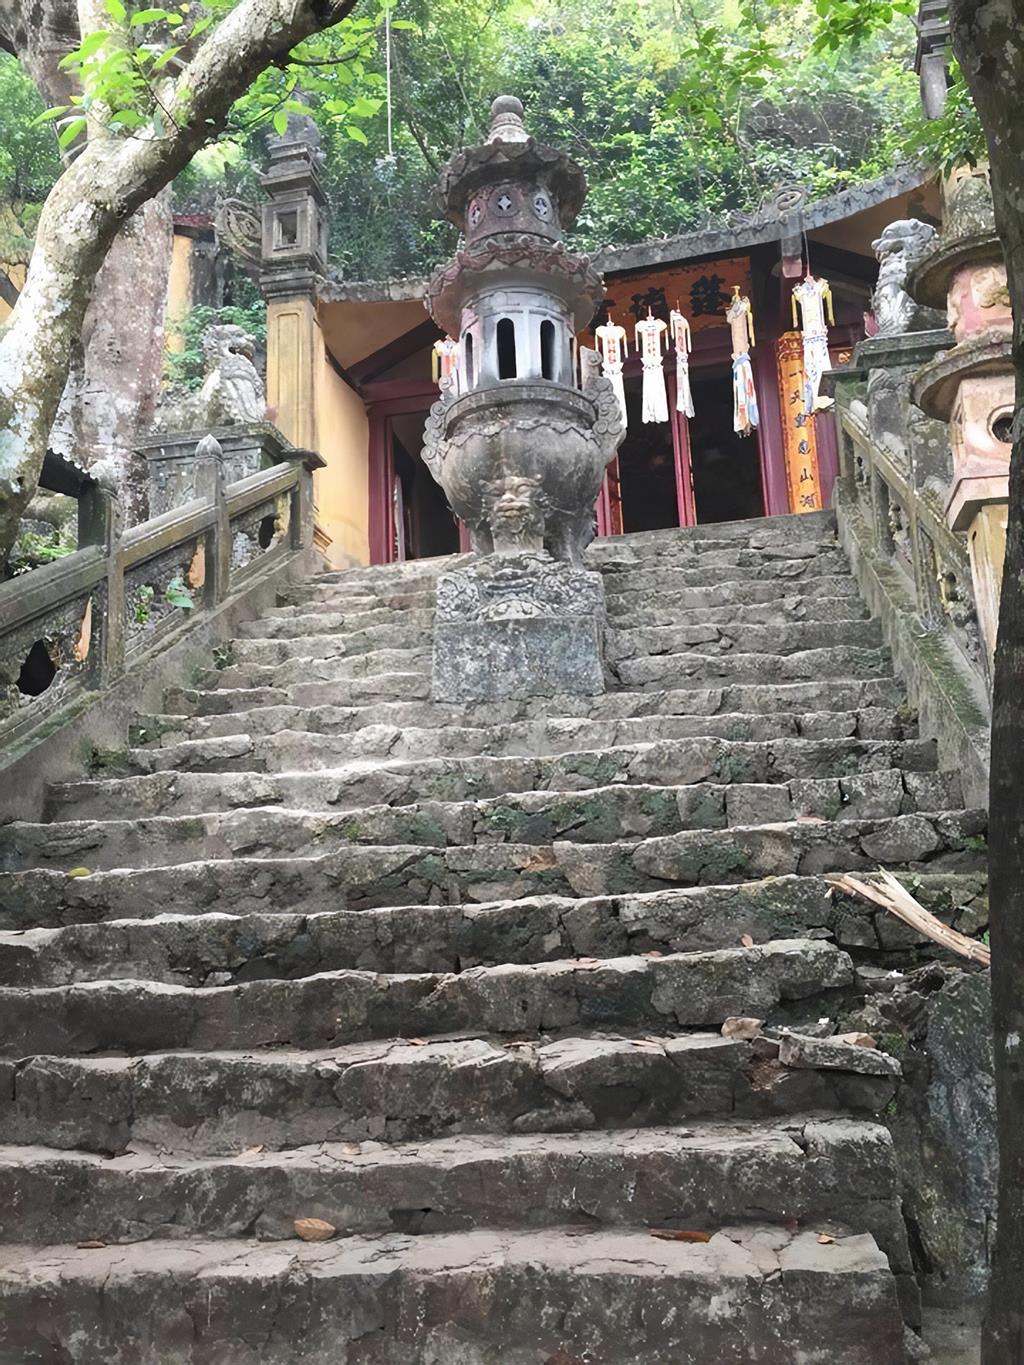 Trải nghiệm đi tour chùa Hương khám phá tuyến Hương Tích | VIETRAVEL